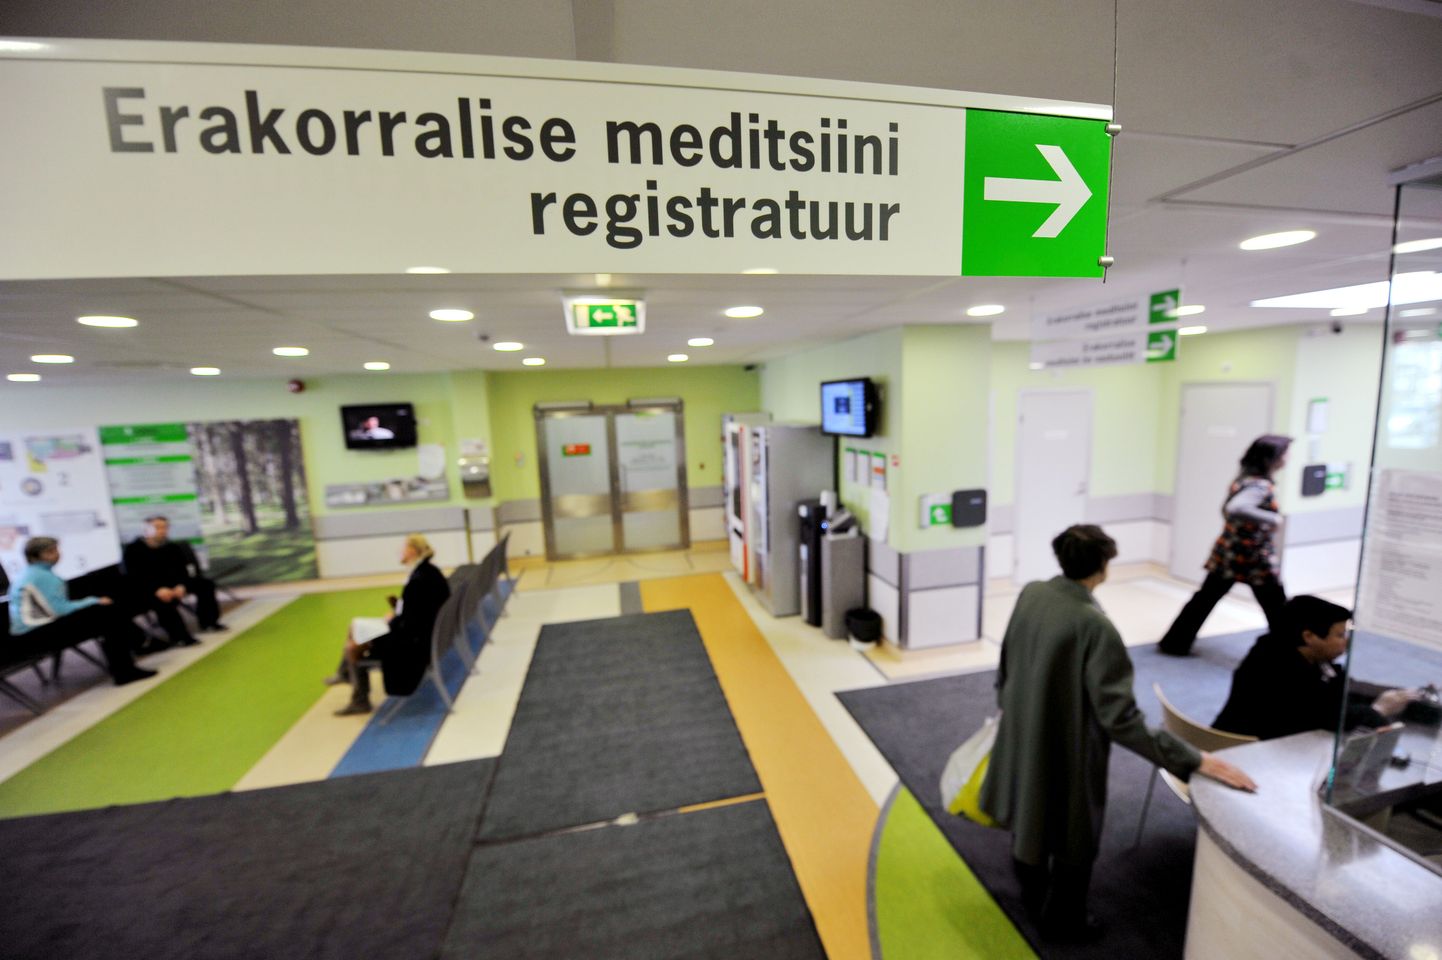 Erakorralise meditsiini osakond Põhja-Eesti regionaalhaiglas